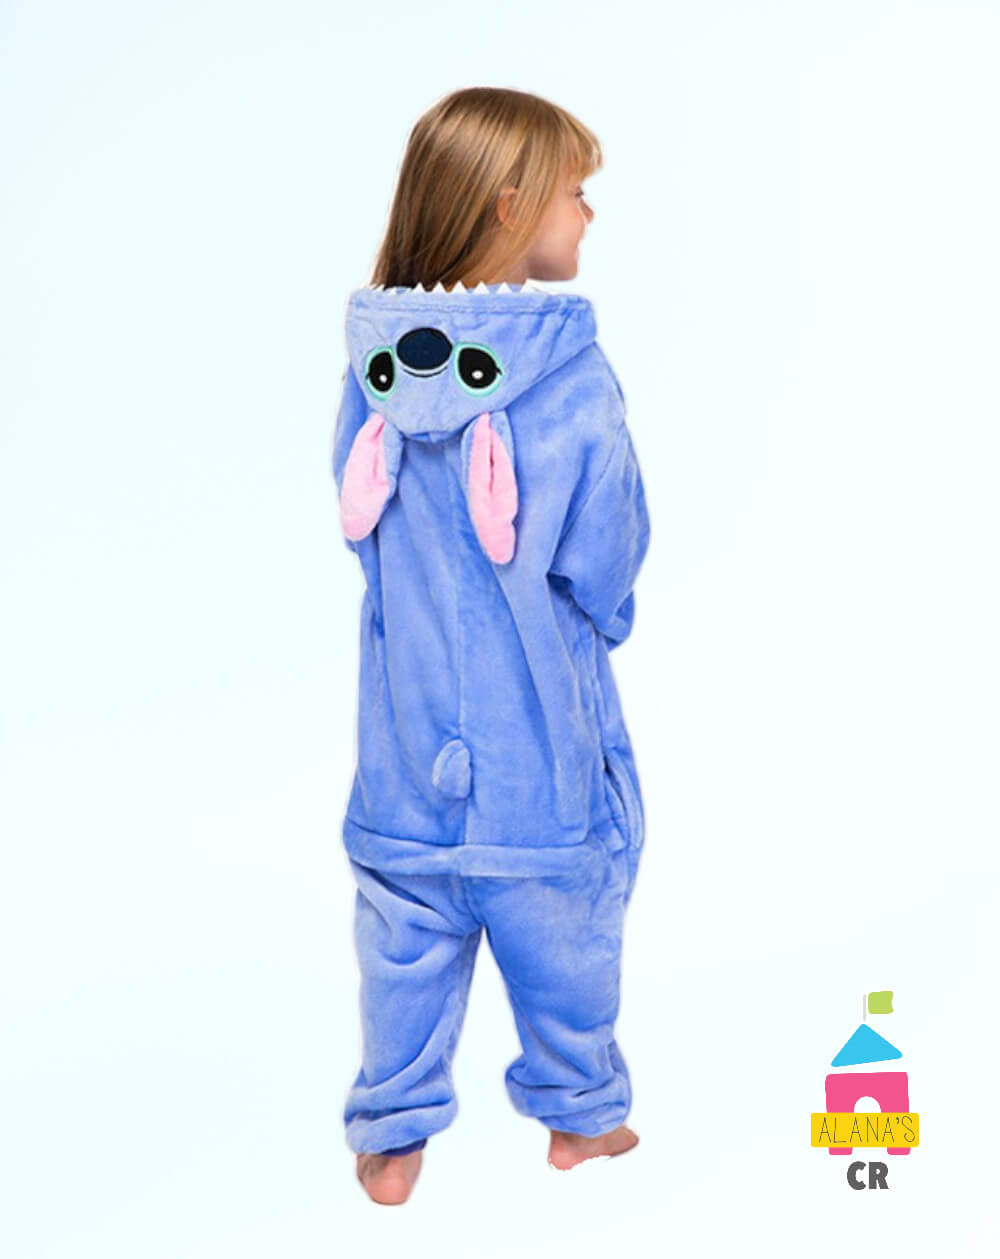 Pijama Alana's CR